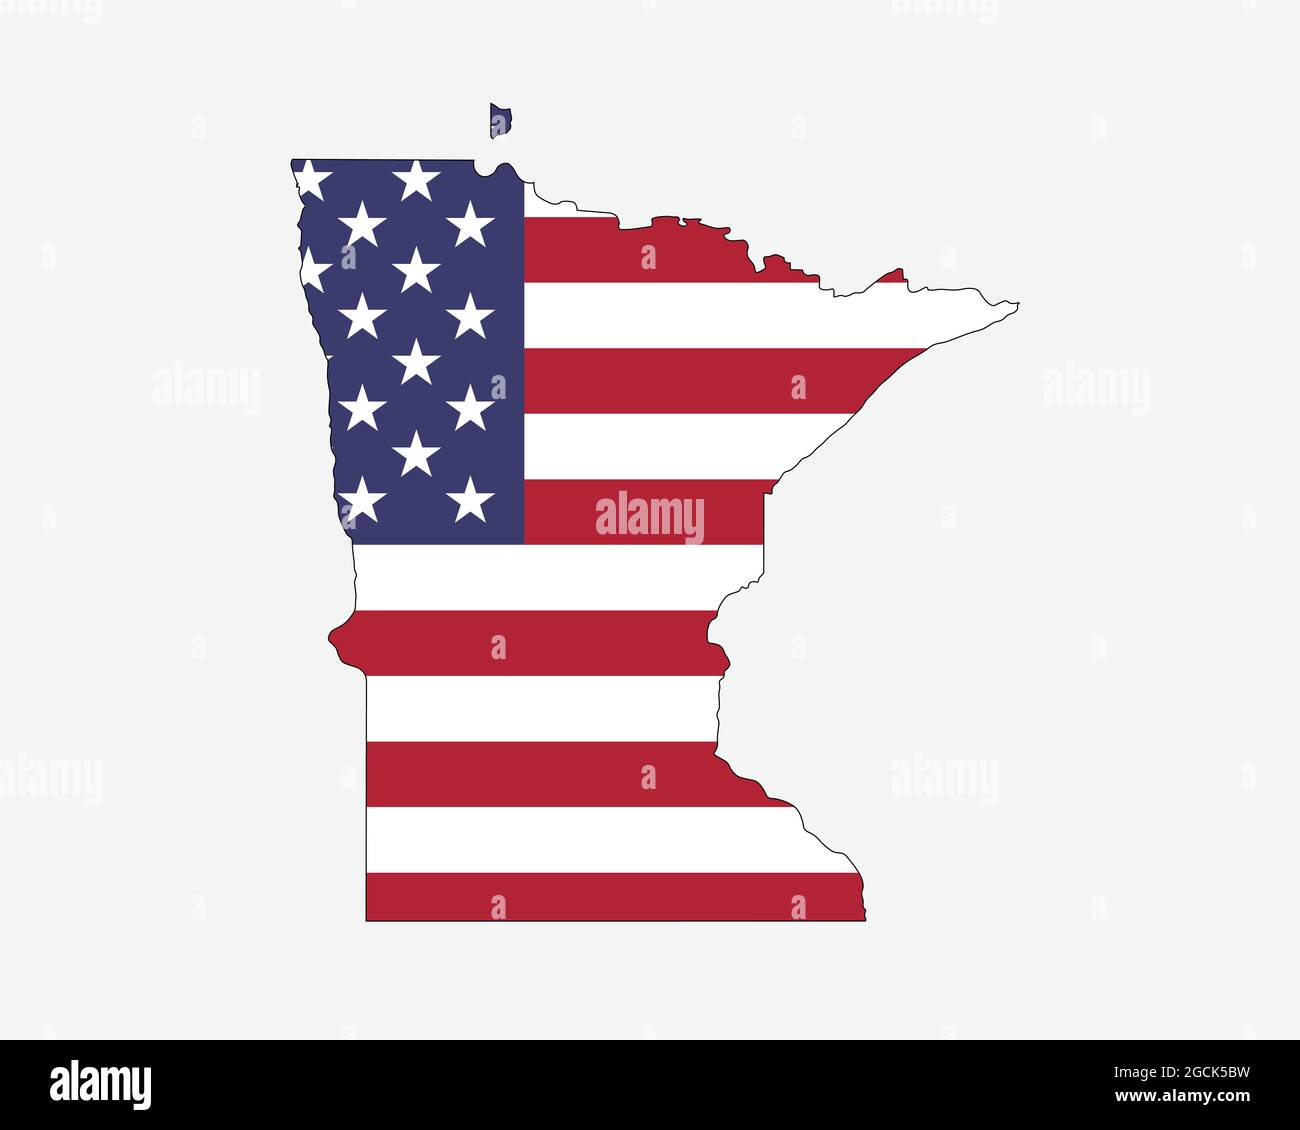 Mappa del Minnesota sulla bandiera americana. MN, USA Mappa di Stato sulla bandiera degli Stati Uniti. Icona Clipart grafica vettoriale EPS Illustrazione Vettoriale